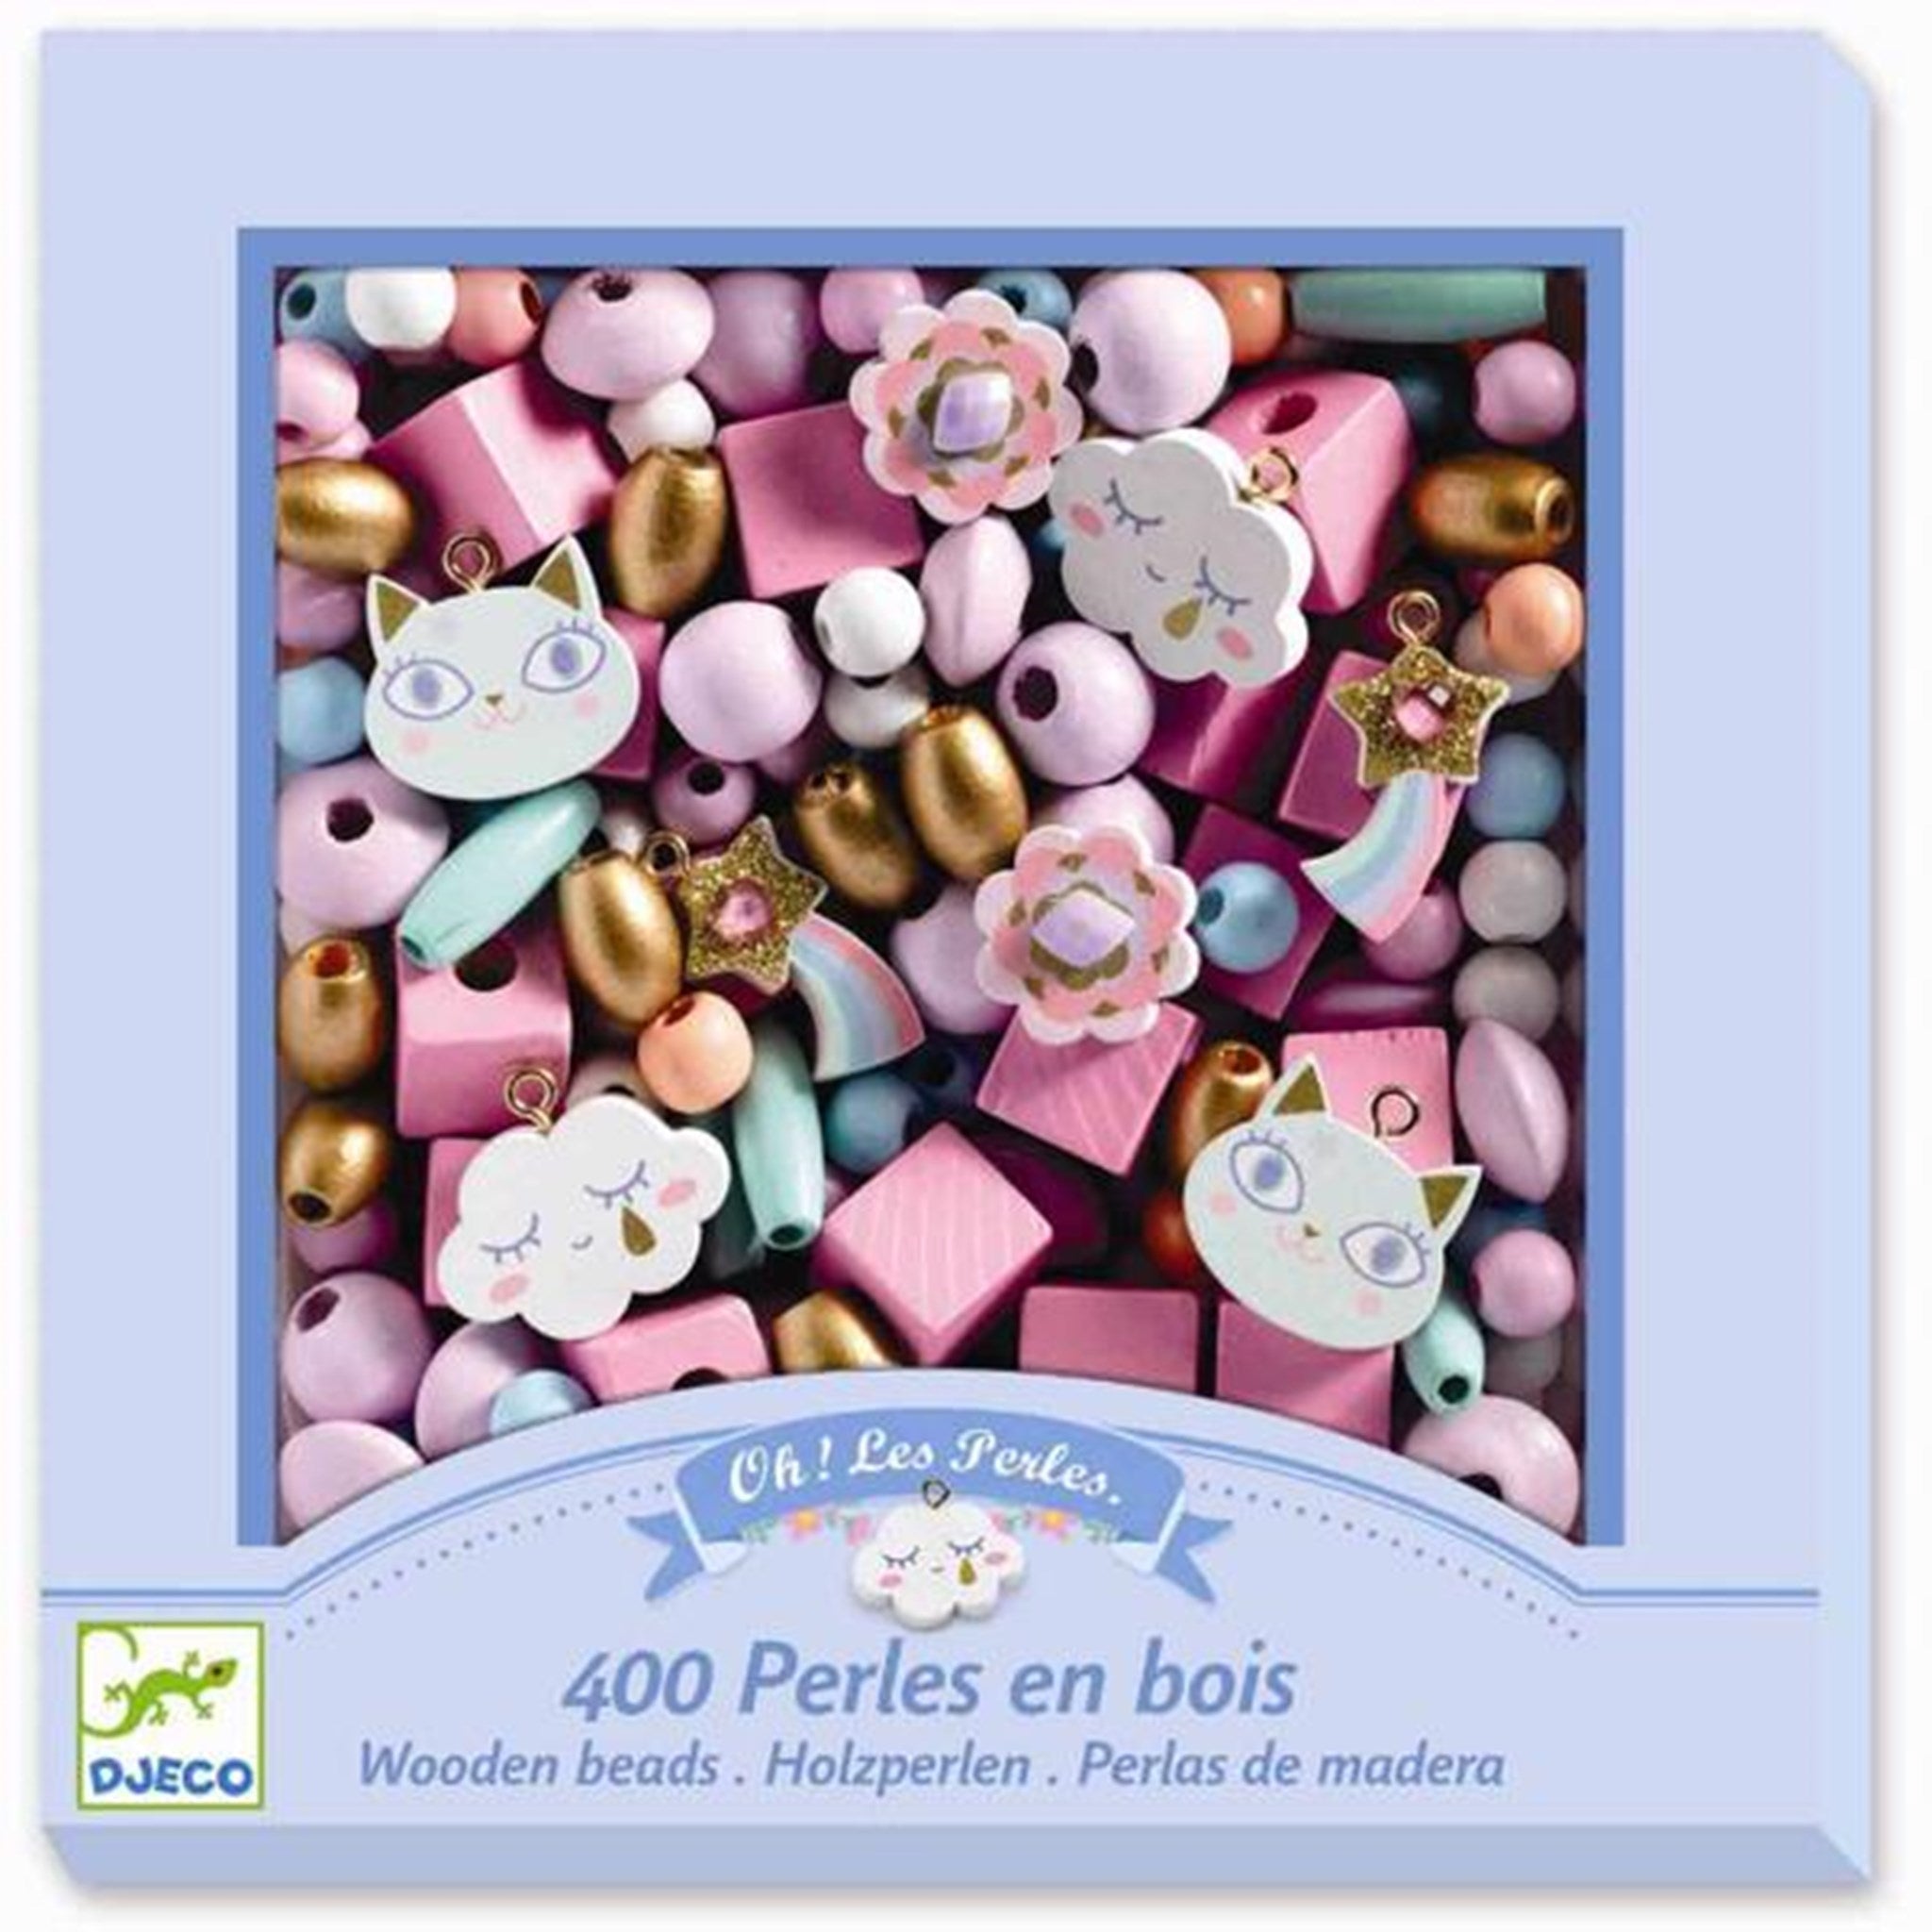 Djeco Perles Wooden Beads Rainbow